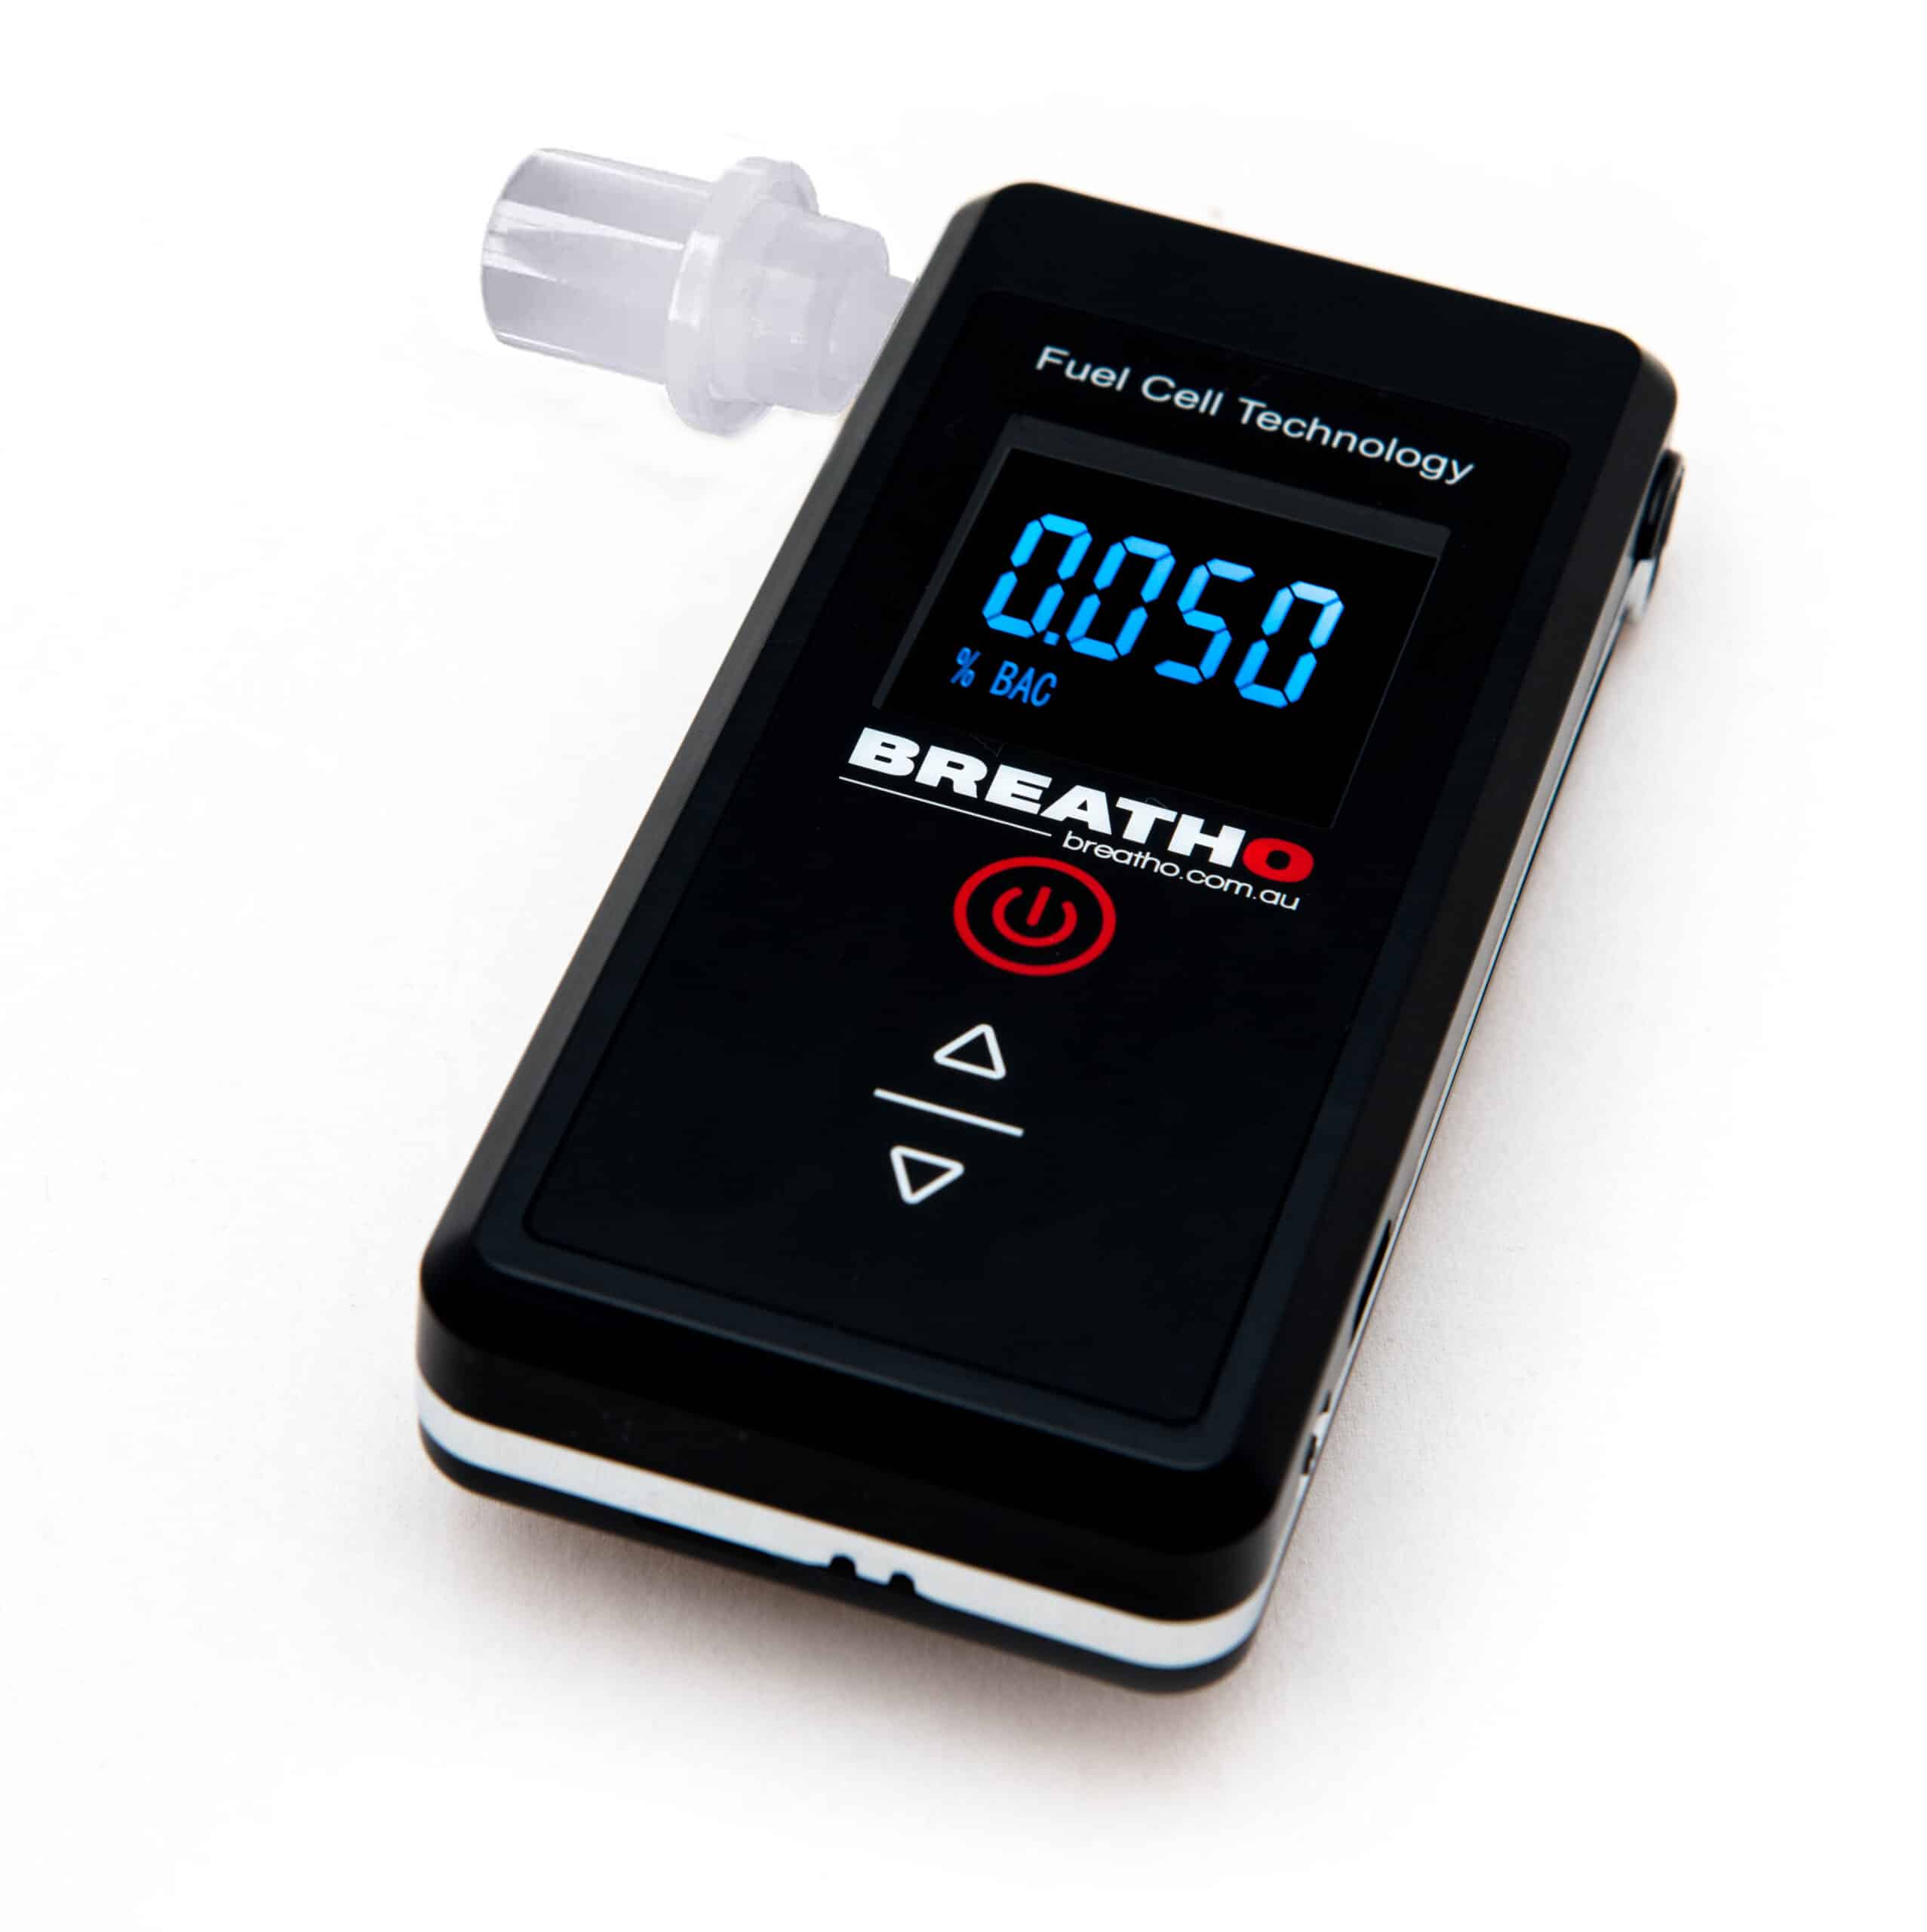 Police Grade Fuel Sensor. Breatho Personal Fuel Cell Breathalyser 